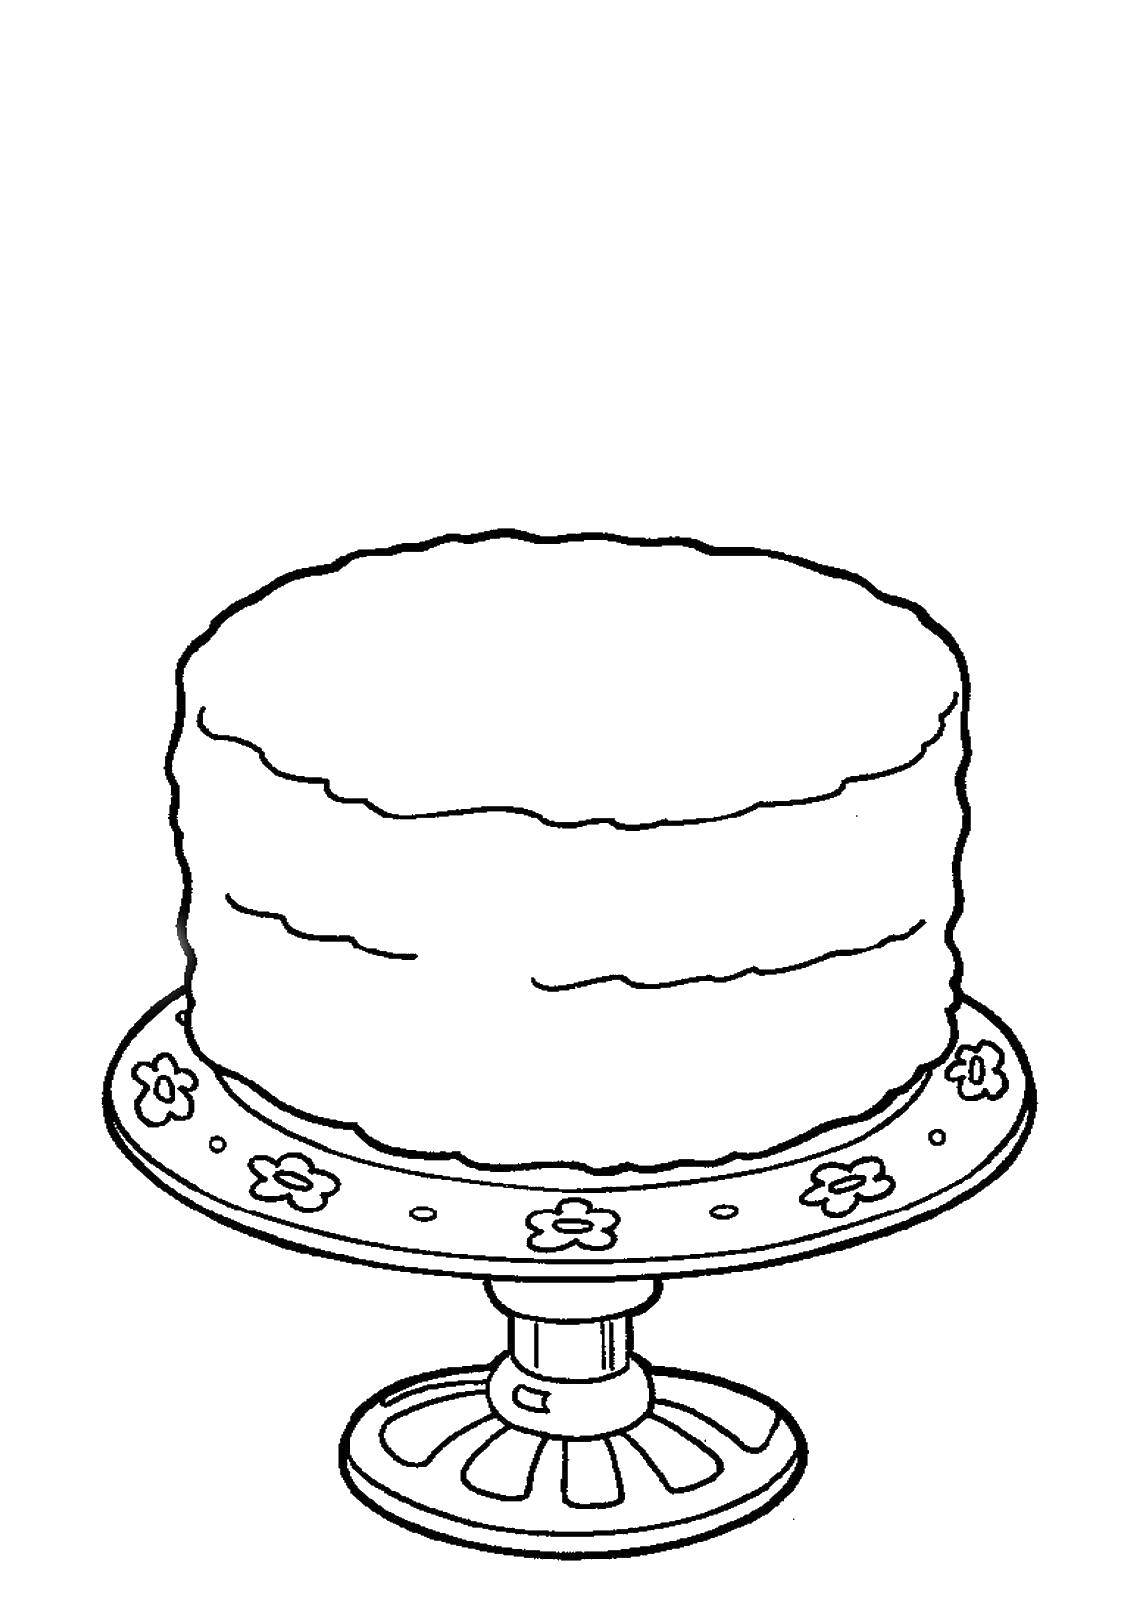 Название: Раскраска Торт на тарелочке. Категория: торты. Теги: Торт, еда, праздник.